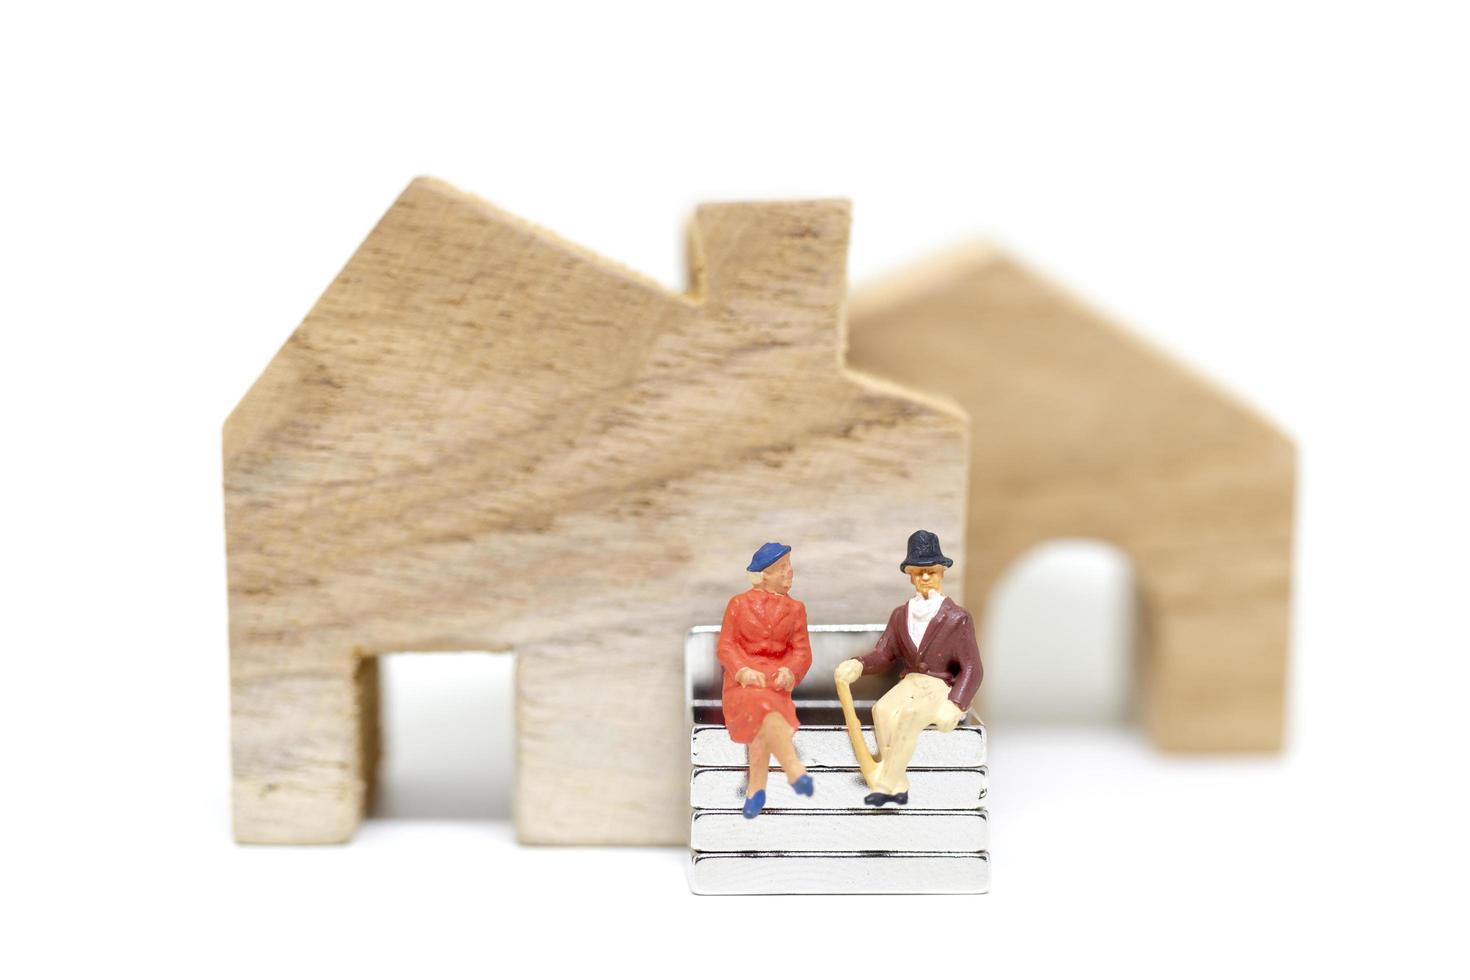 Marido y mujer en miniatura sentados delante de una casa sobre un fondo blanco, concepto de familia foto